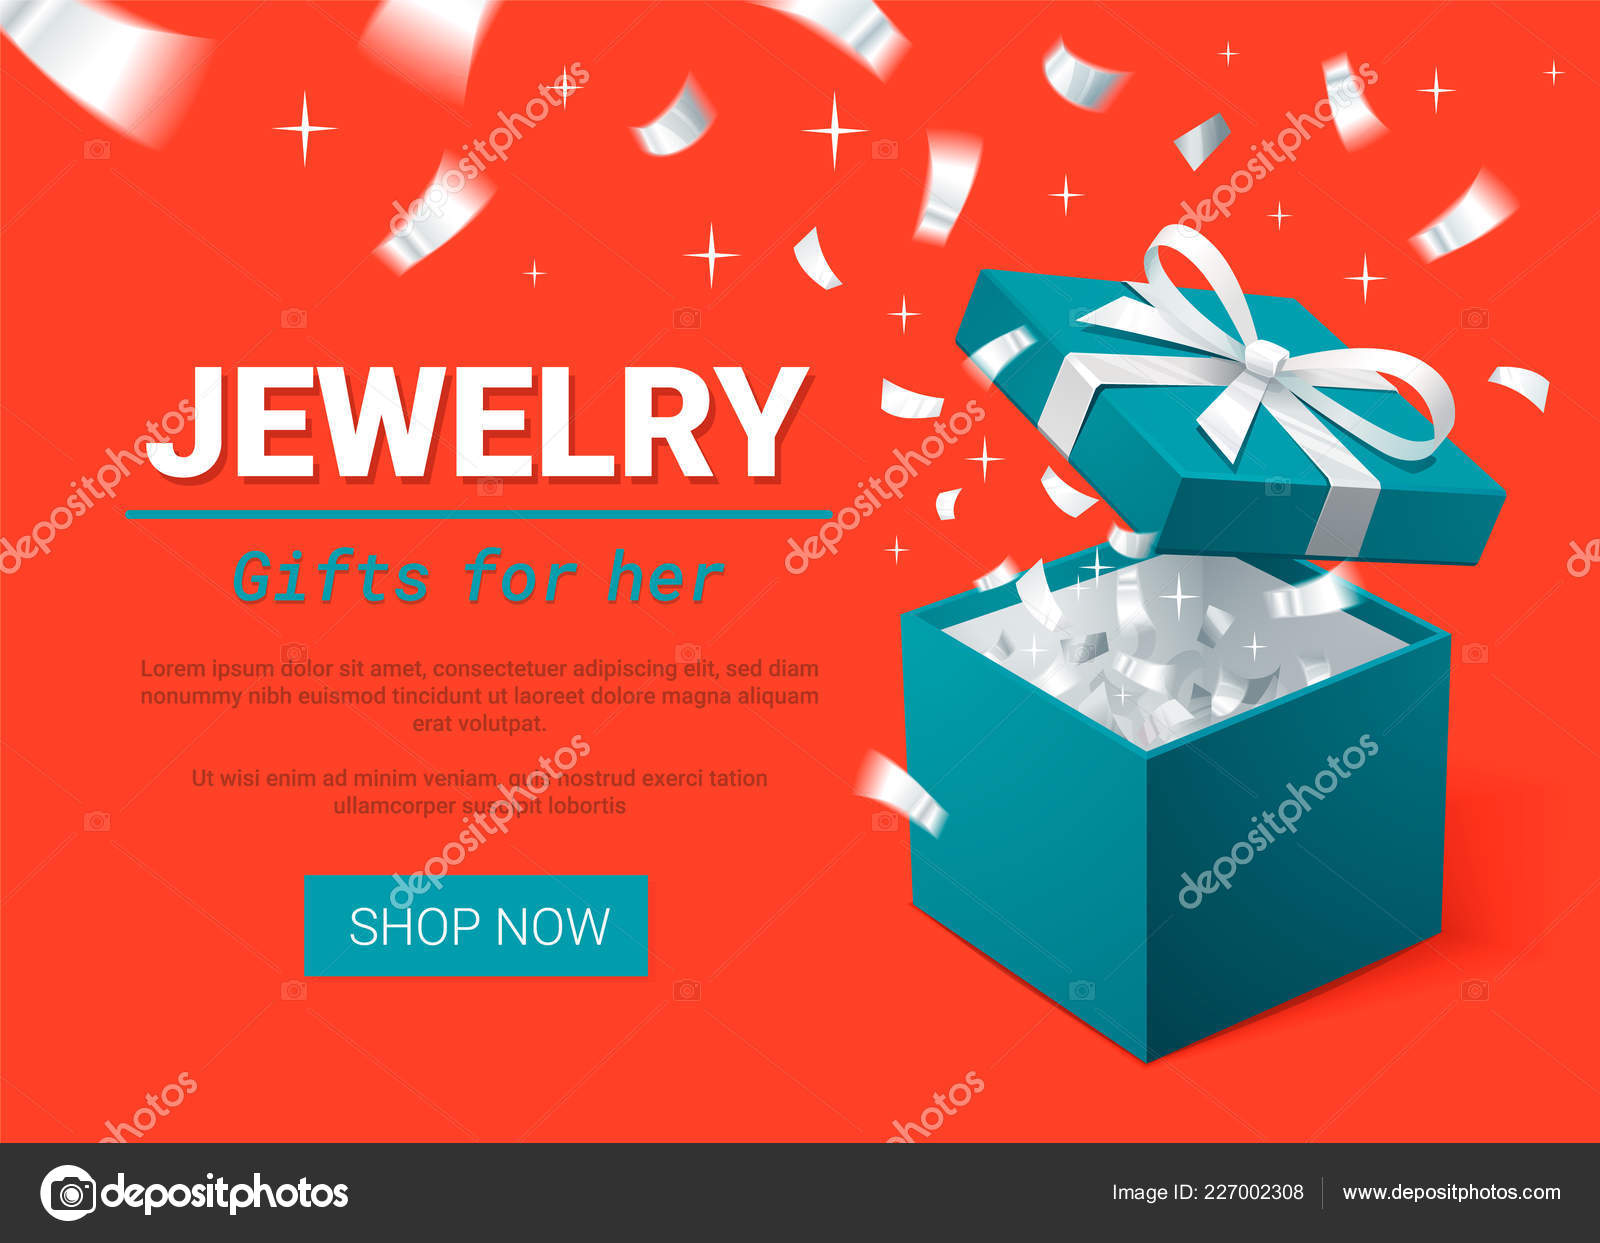 Jewelry Stock Photo - Download Image Now - Jewelry, Jewelry Box